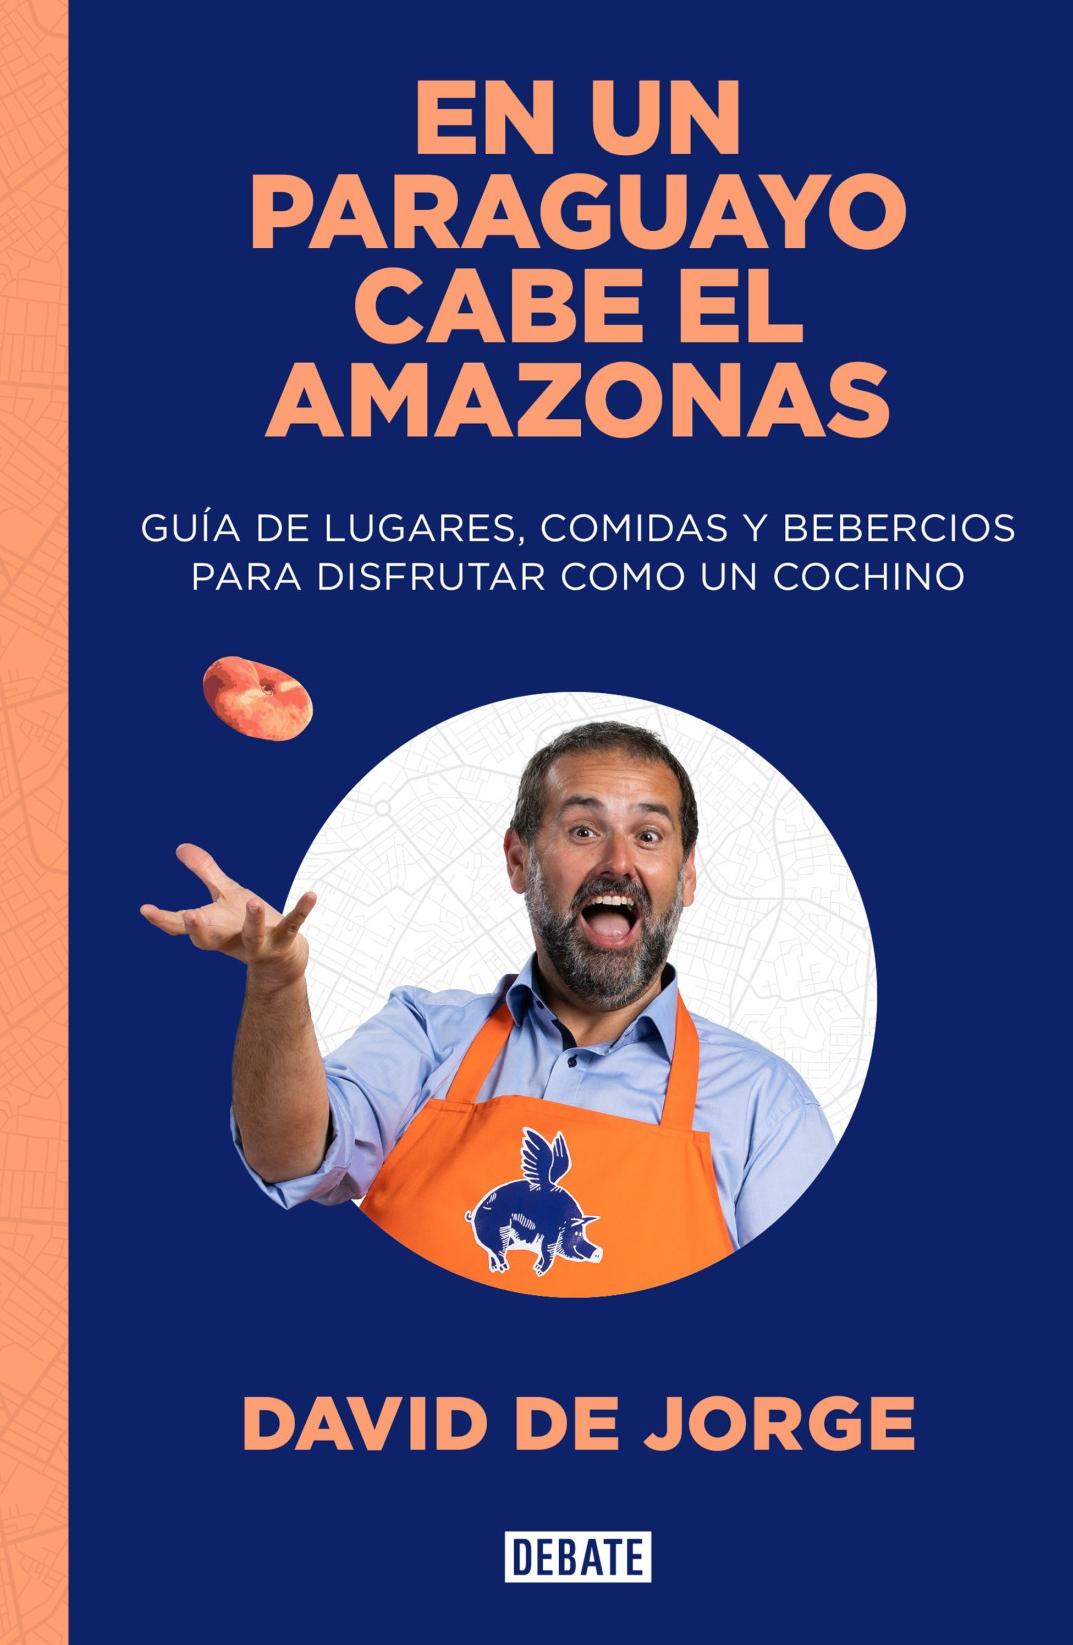 En un paraguayo cabe el Amazonas "Guía de lugares, comidas y bebercios para disfrutar como un cochino "